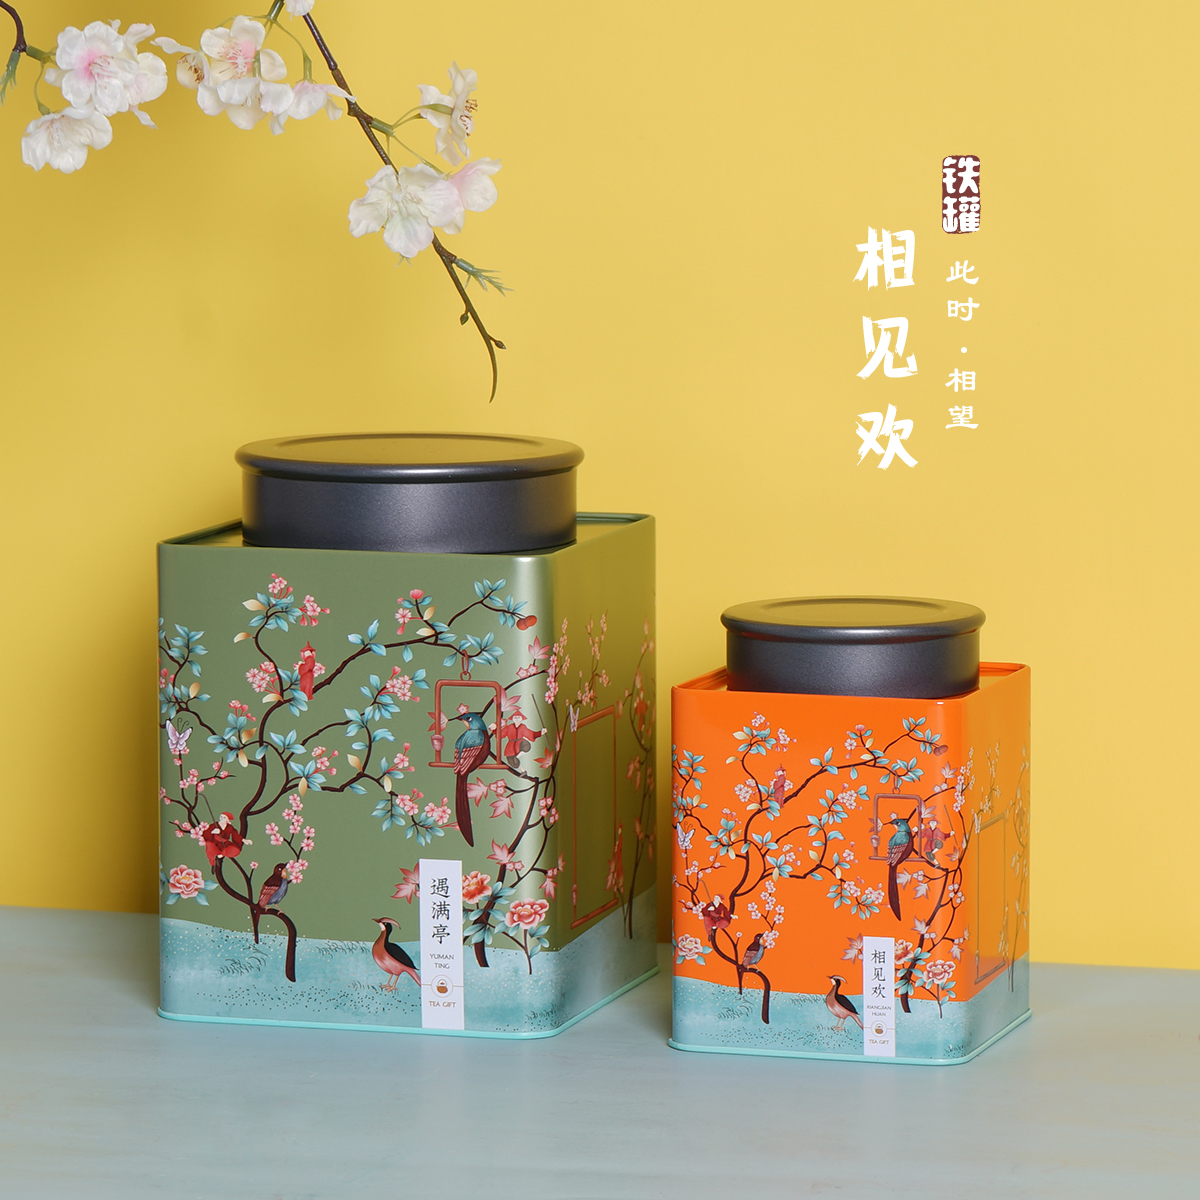 新款通用大号茶叶罐半斤一斤装小青柑花茶绿茶单从茶铁罐铁盒定制-图1